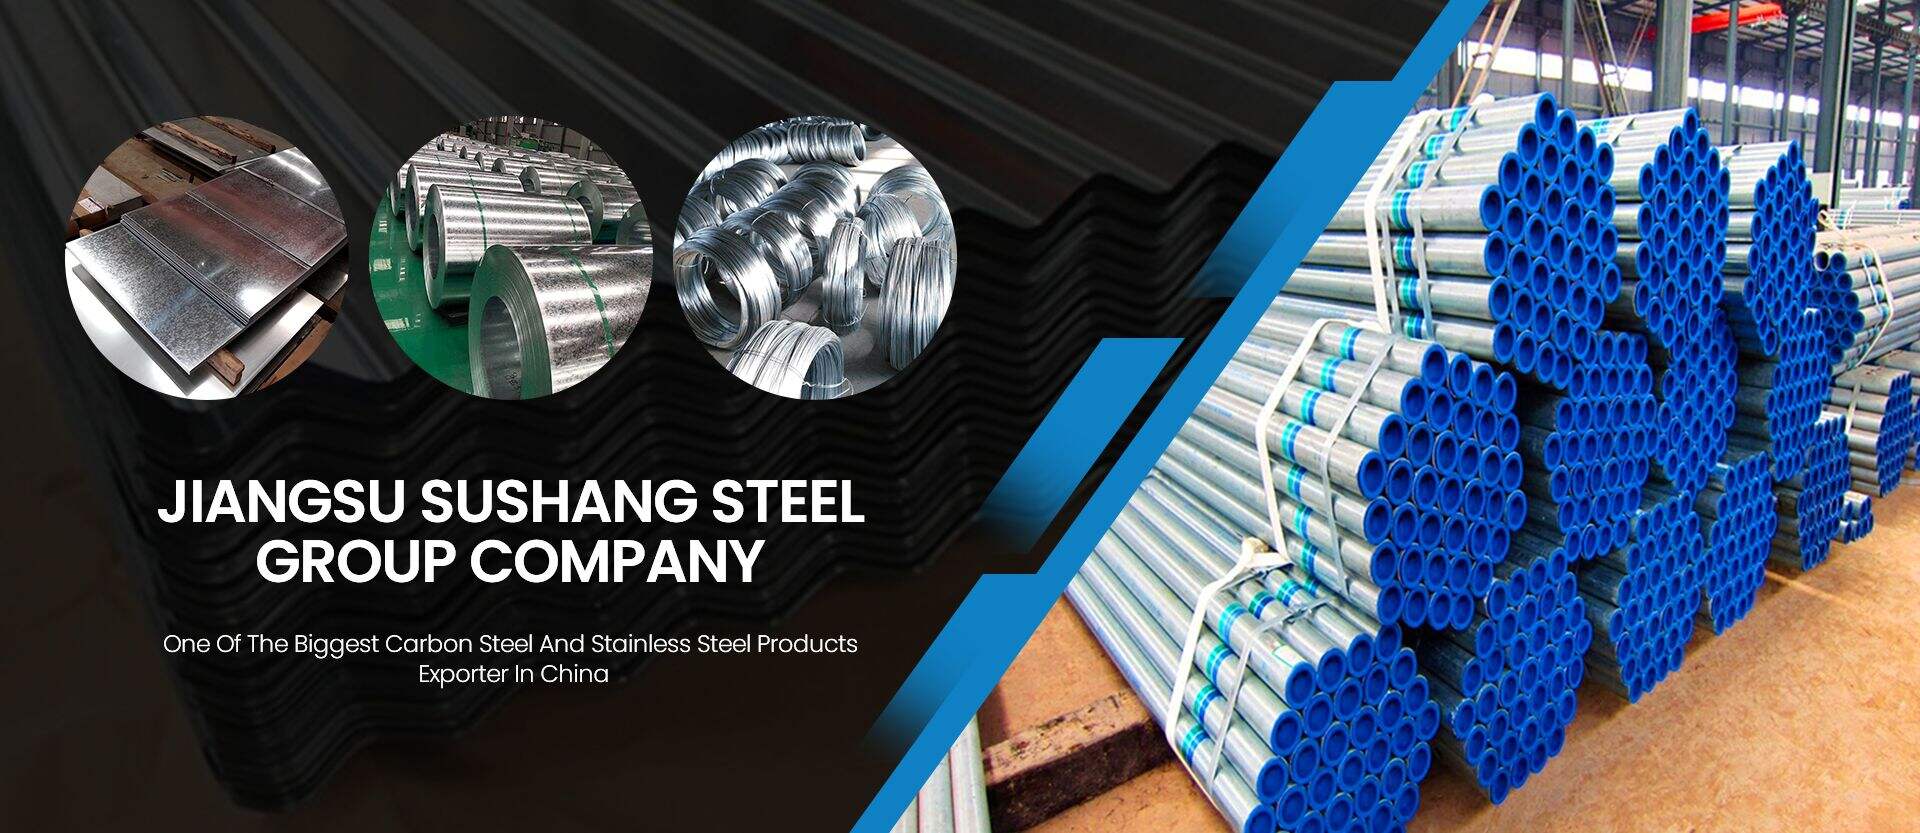 Jiangsu Sushang Steel Grup Company